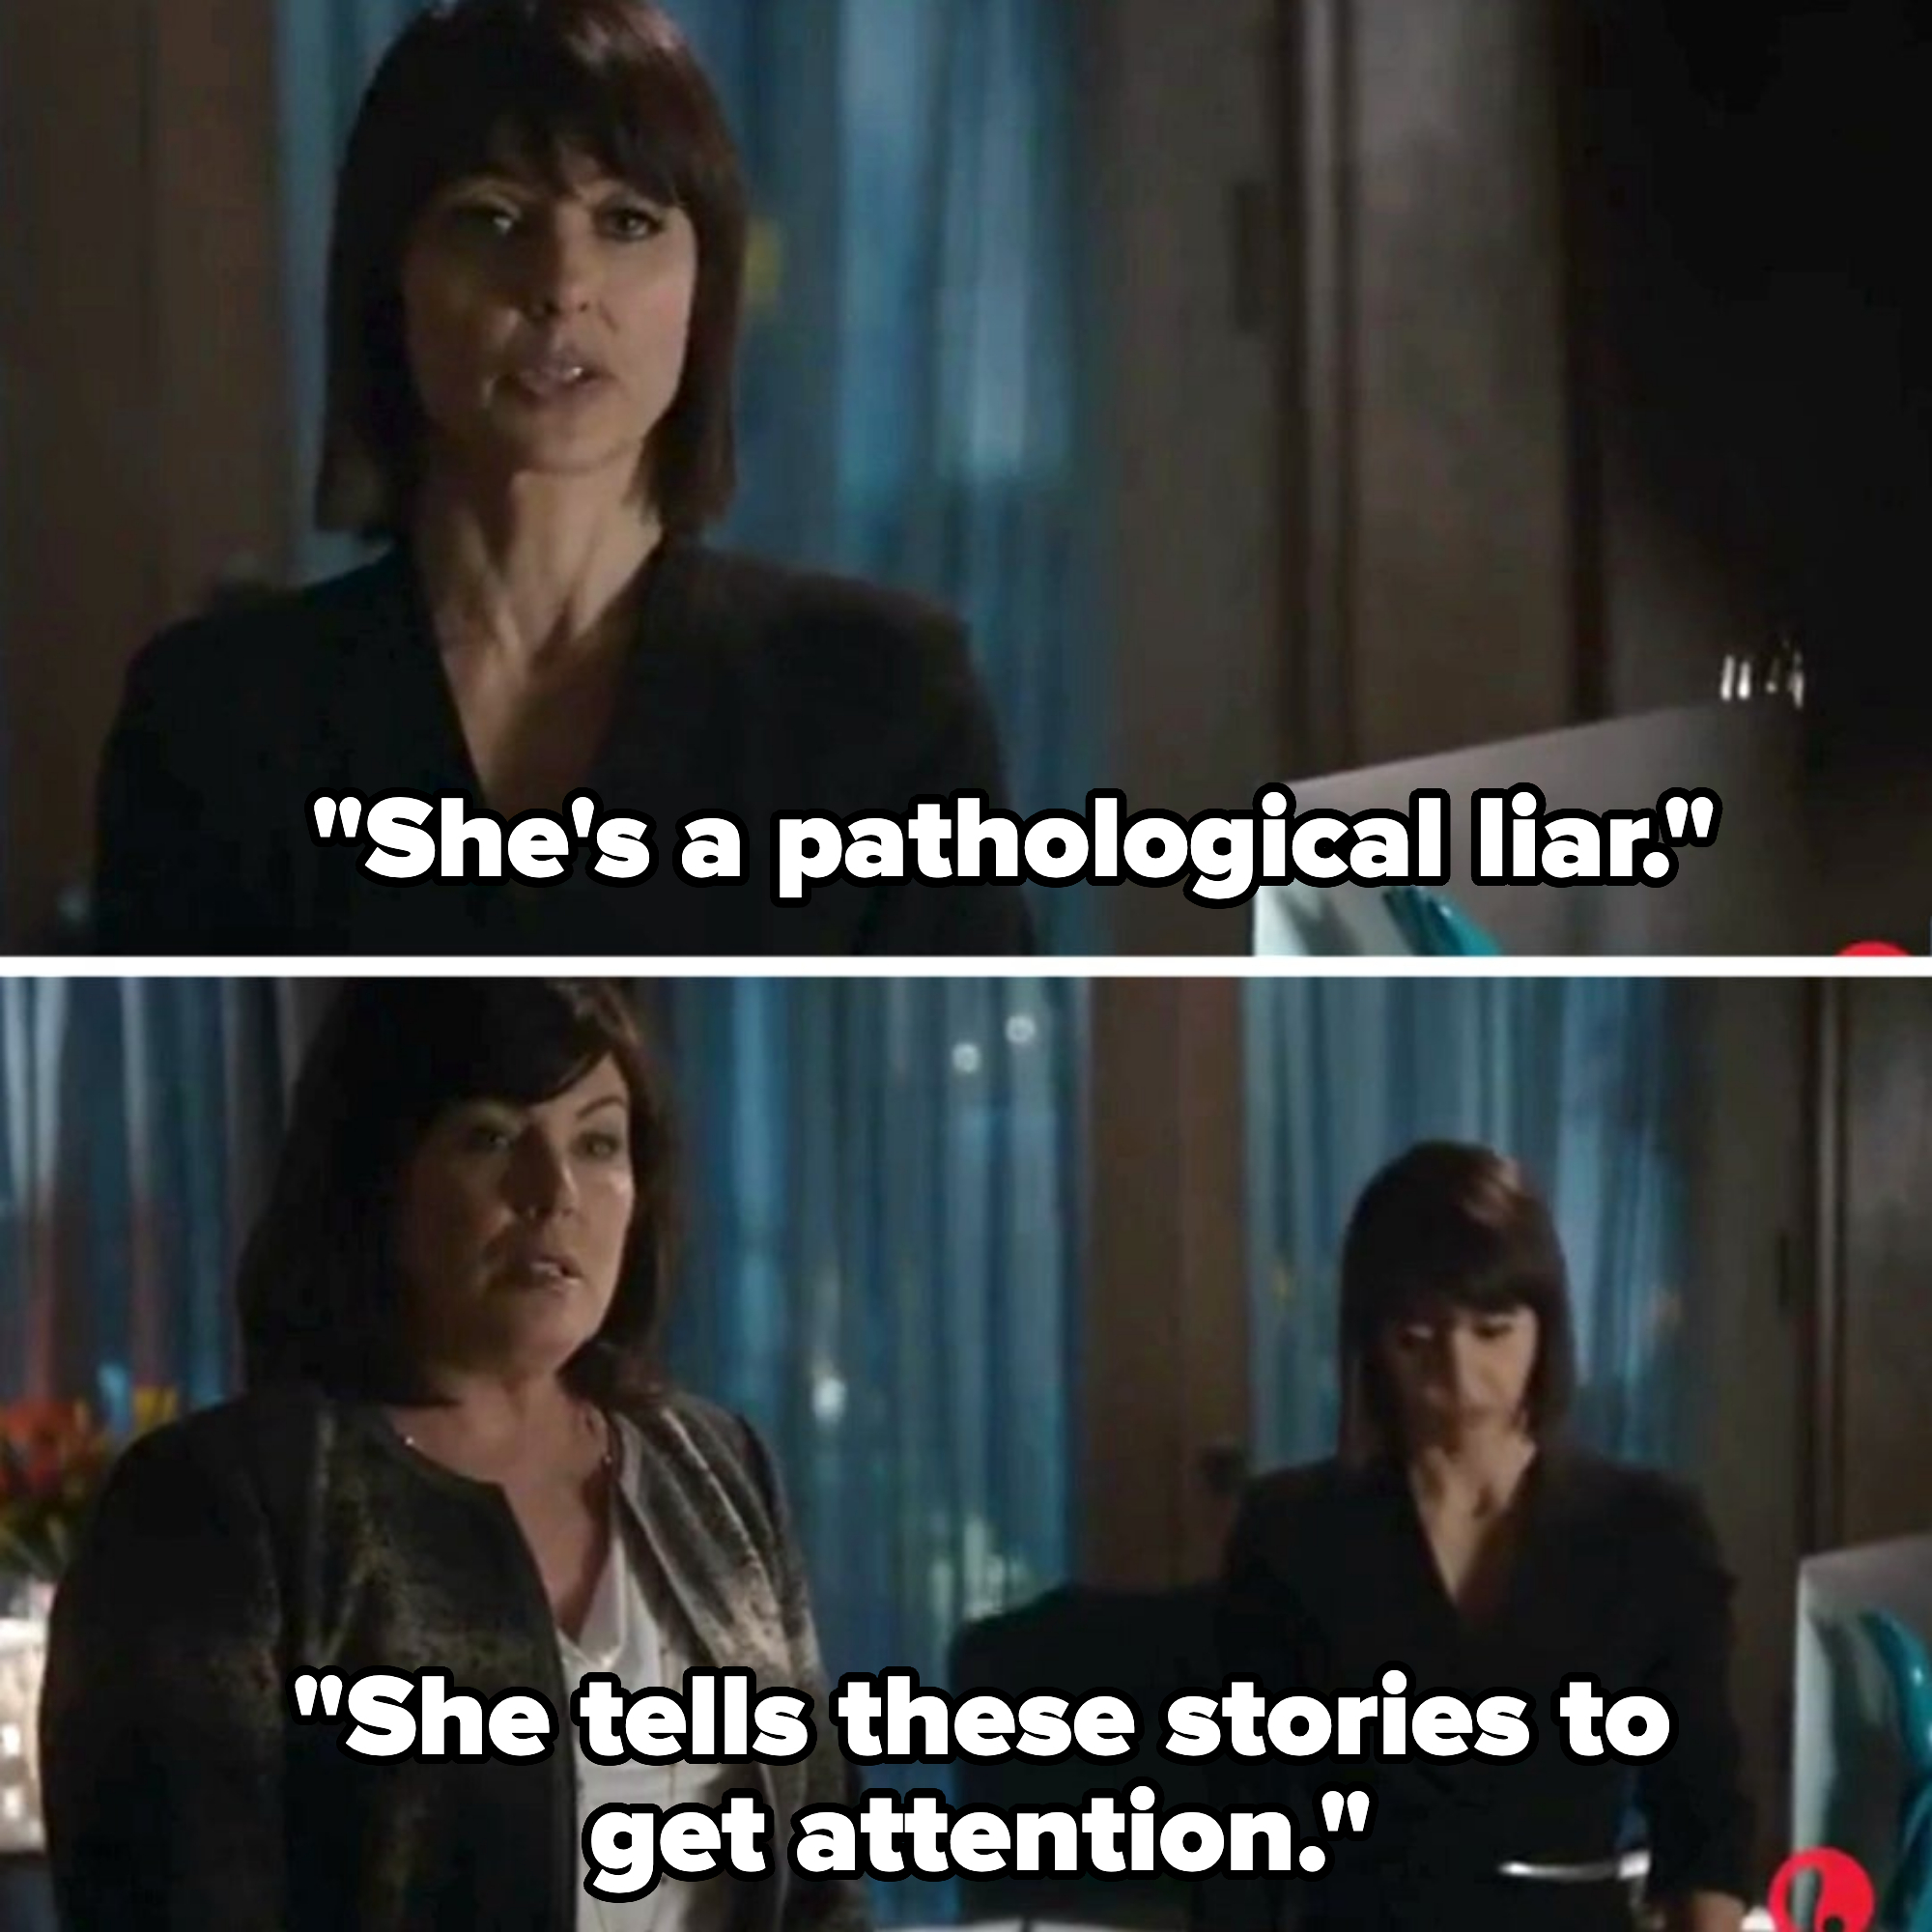 &quot;She&#x27;s a pathological liar.&quot;